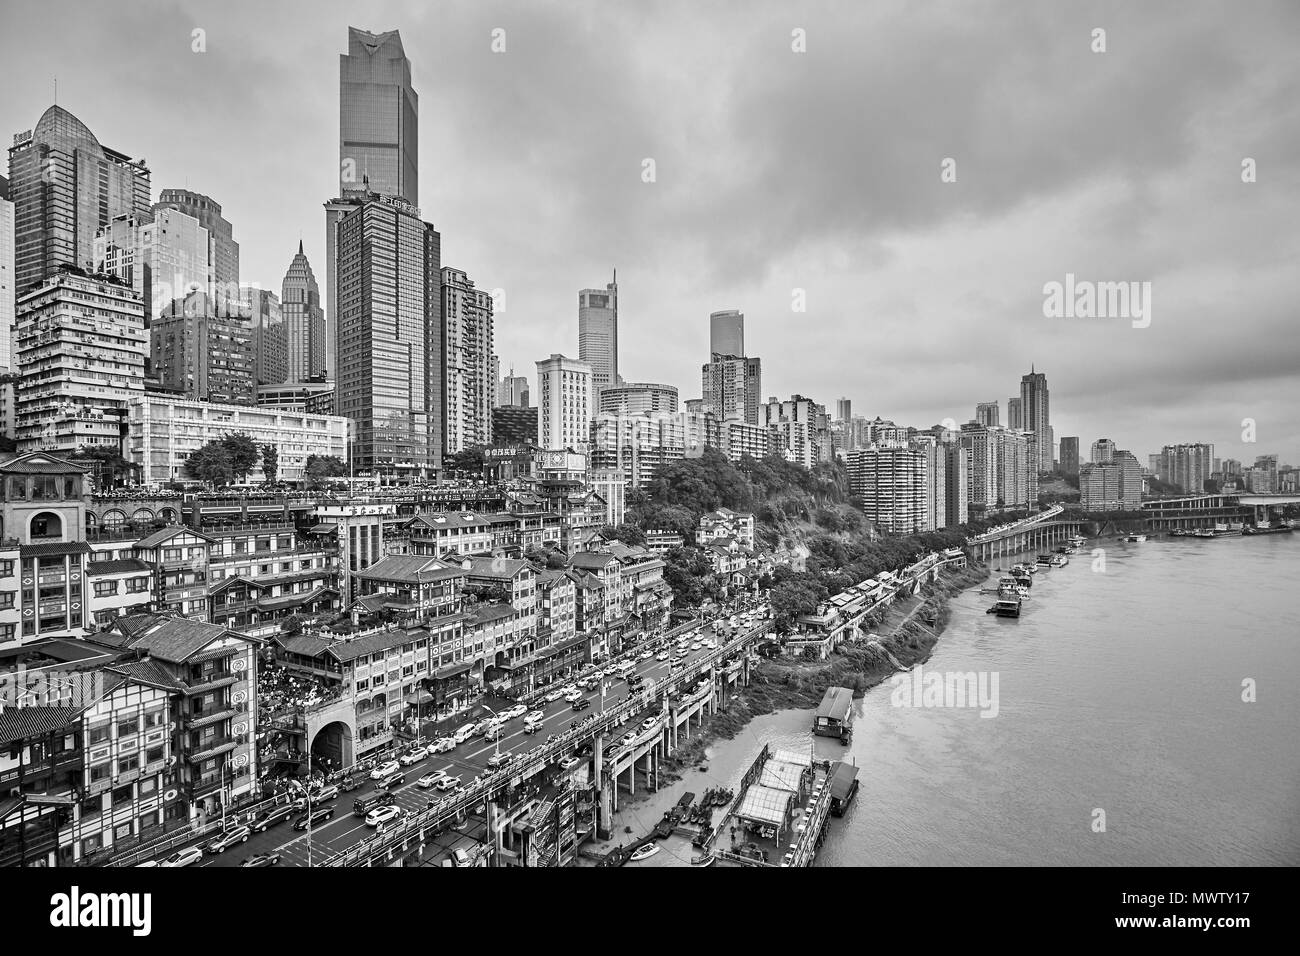 Chongqing, China - Oktober 03, 2017: Stadt am Wasser an einem regnerischen Tag. Die Stadt ist das wirtschaftliche Zentrum der vorderen Yangtze Becken. Stockfoto